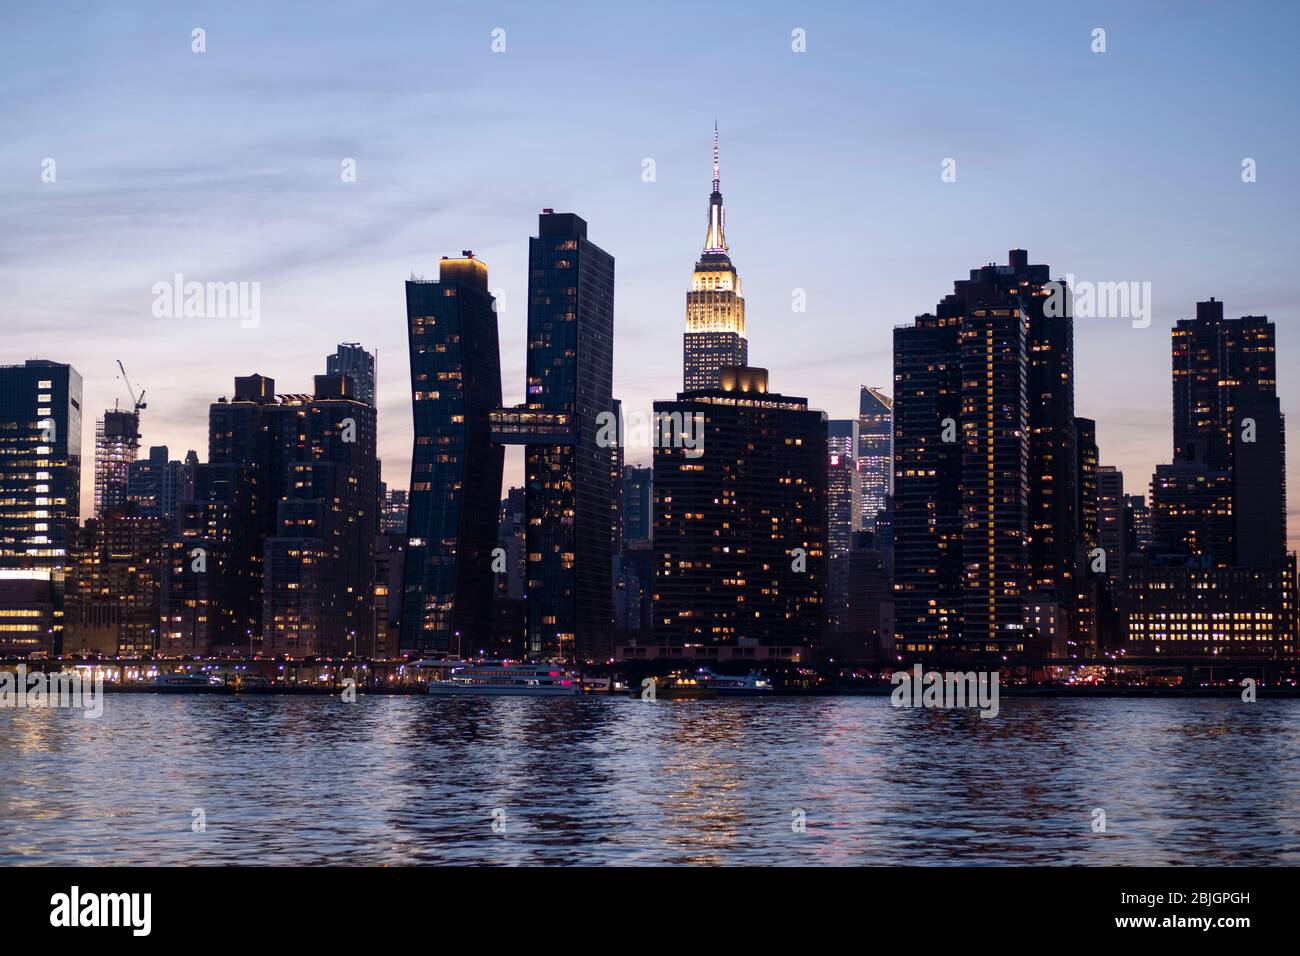 Vista mozzafiato dello skyline di Manhattan con l'imponente Empire state Building visto dall'East River a New York City Foto Stock